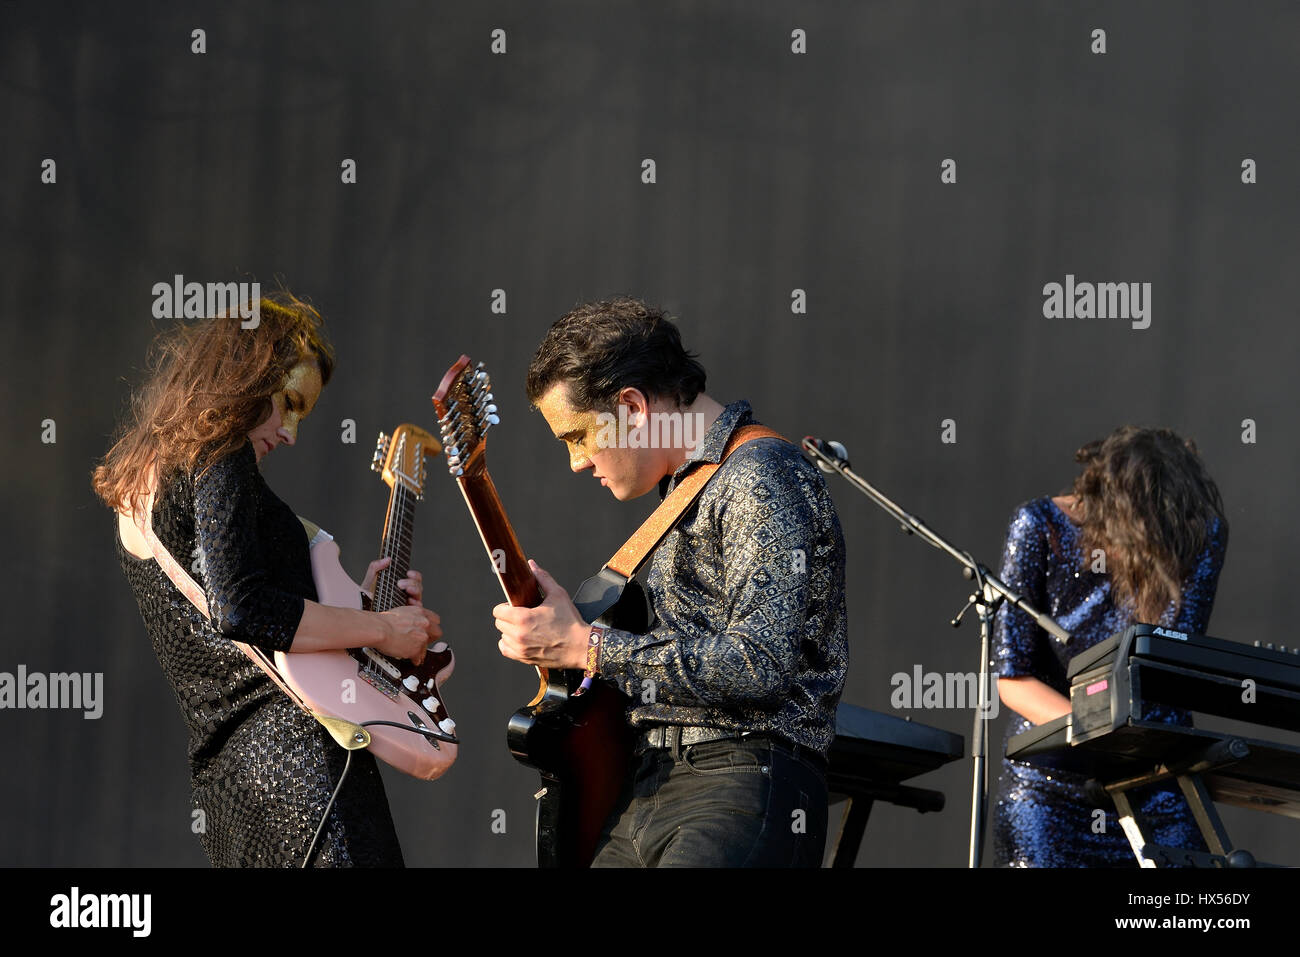 BENICASSIM, ESPAGNE - 17 juil : Moodoid (fusion rock band) en concert au Festival le 17 juillet 2015 à Benicassim, Espagne. Banque D'Images